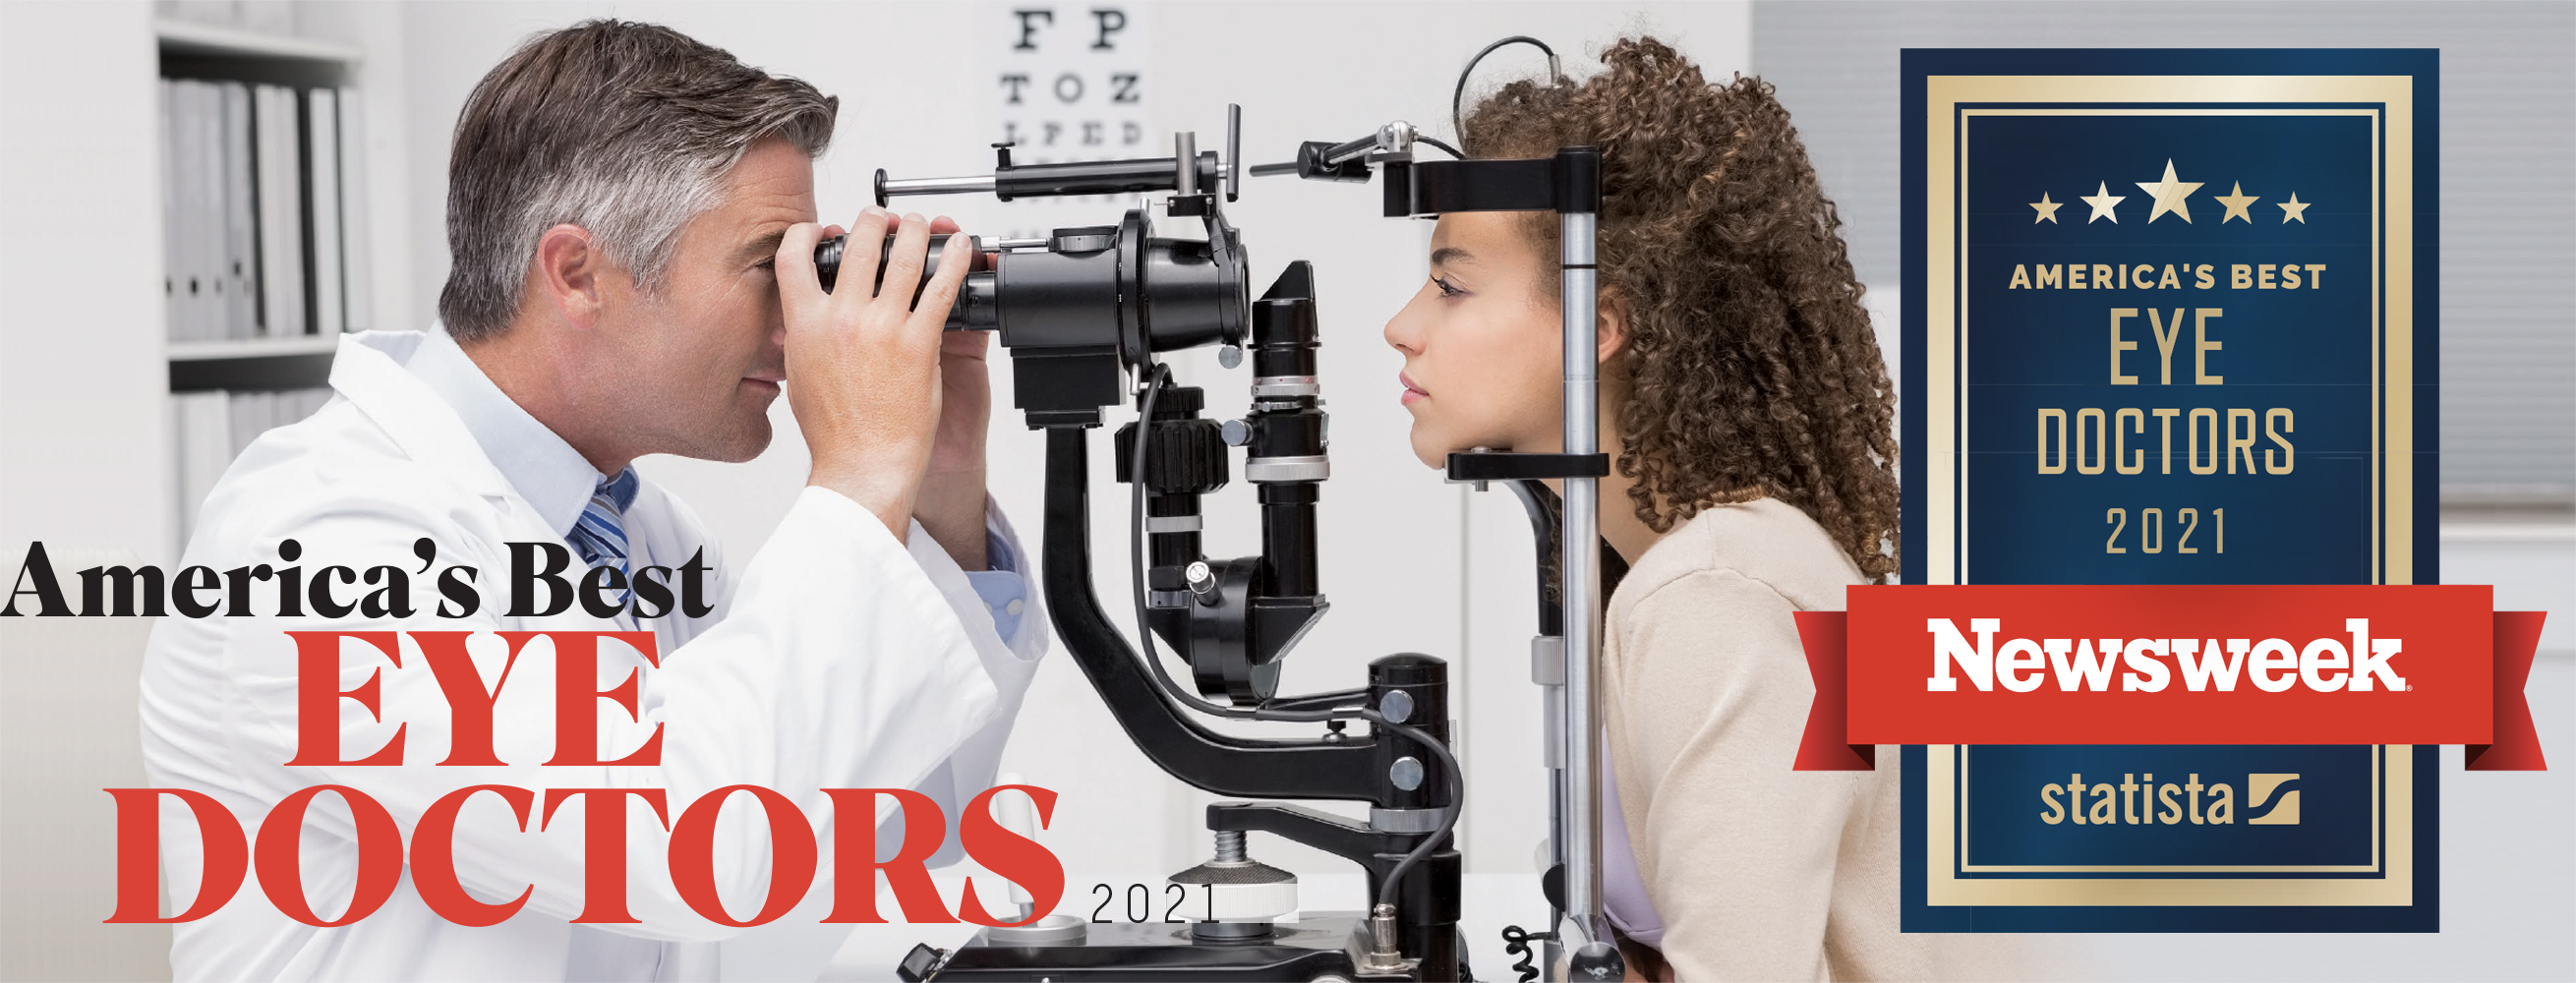 Americas Best Eye Doctors 2021 